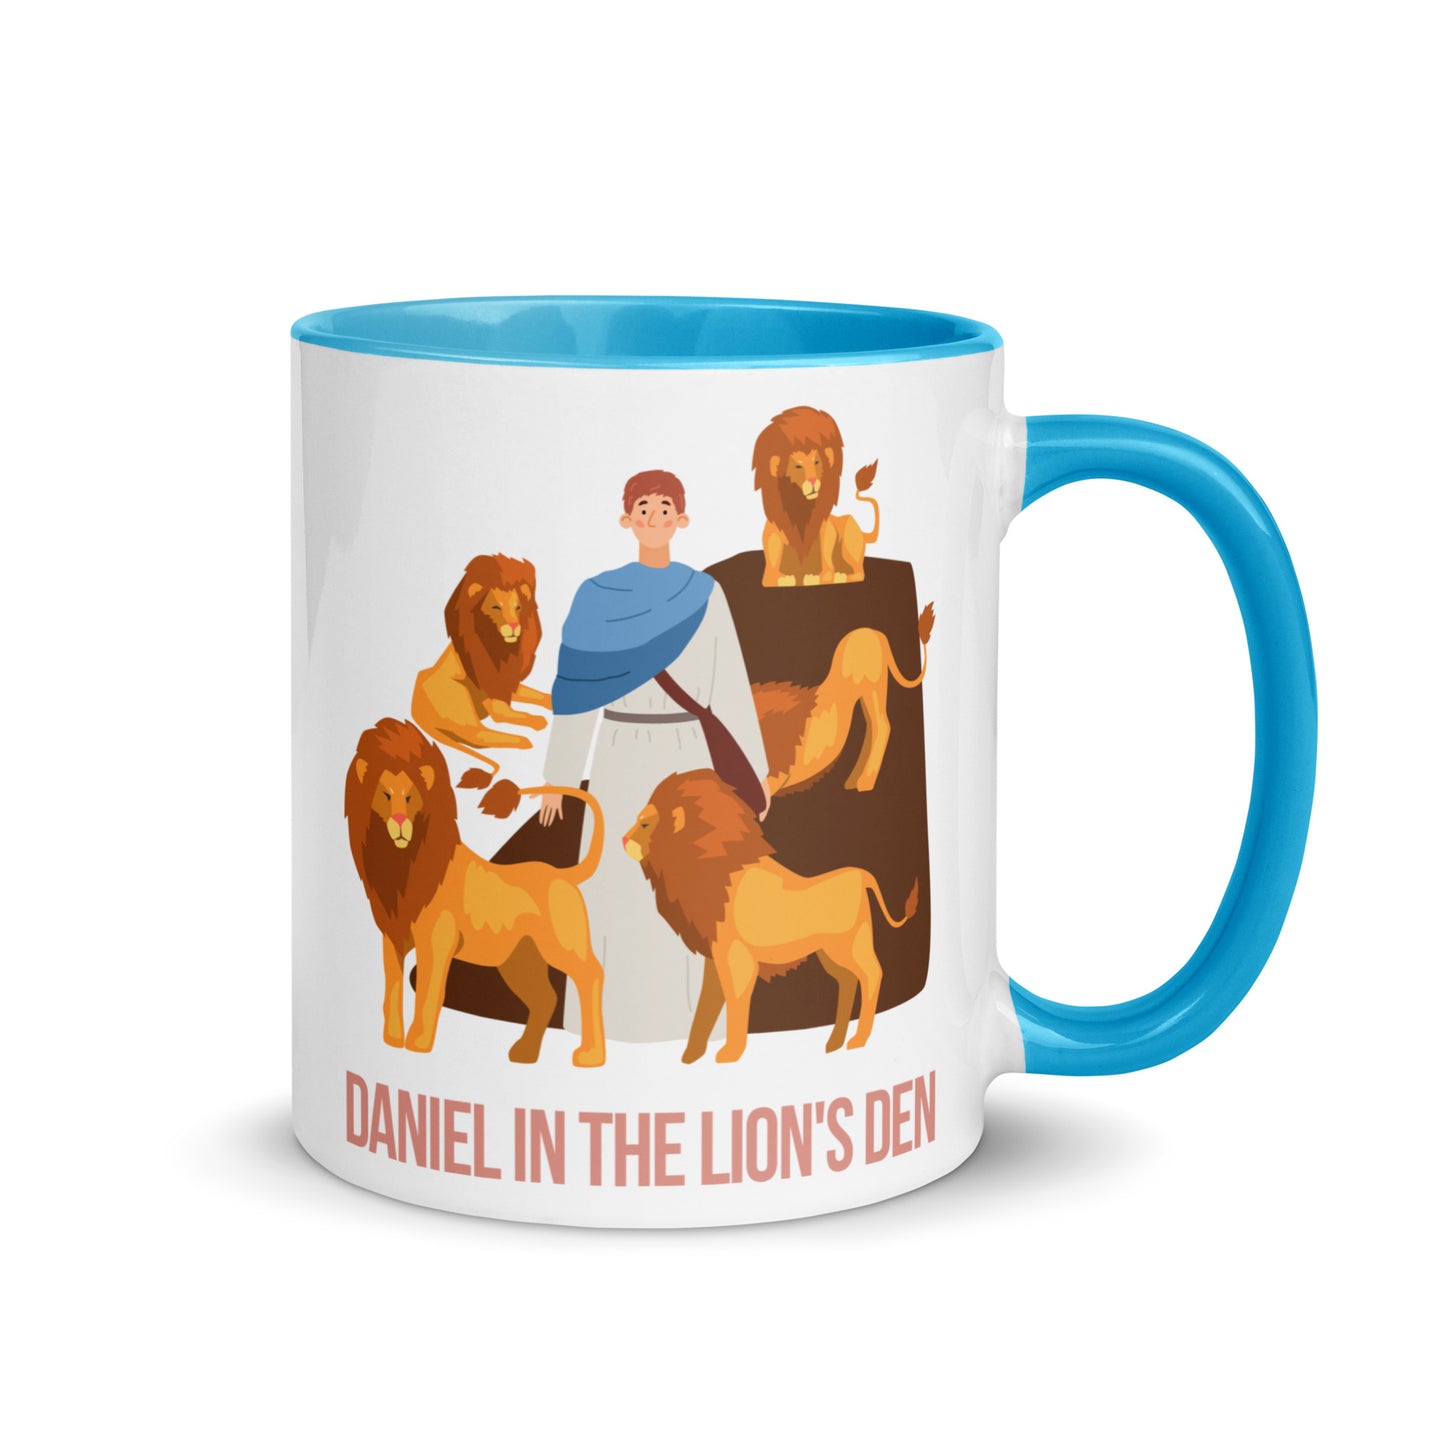 Daniel in the Lion's Den Mug with Color Inside